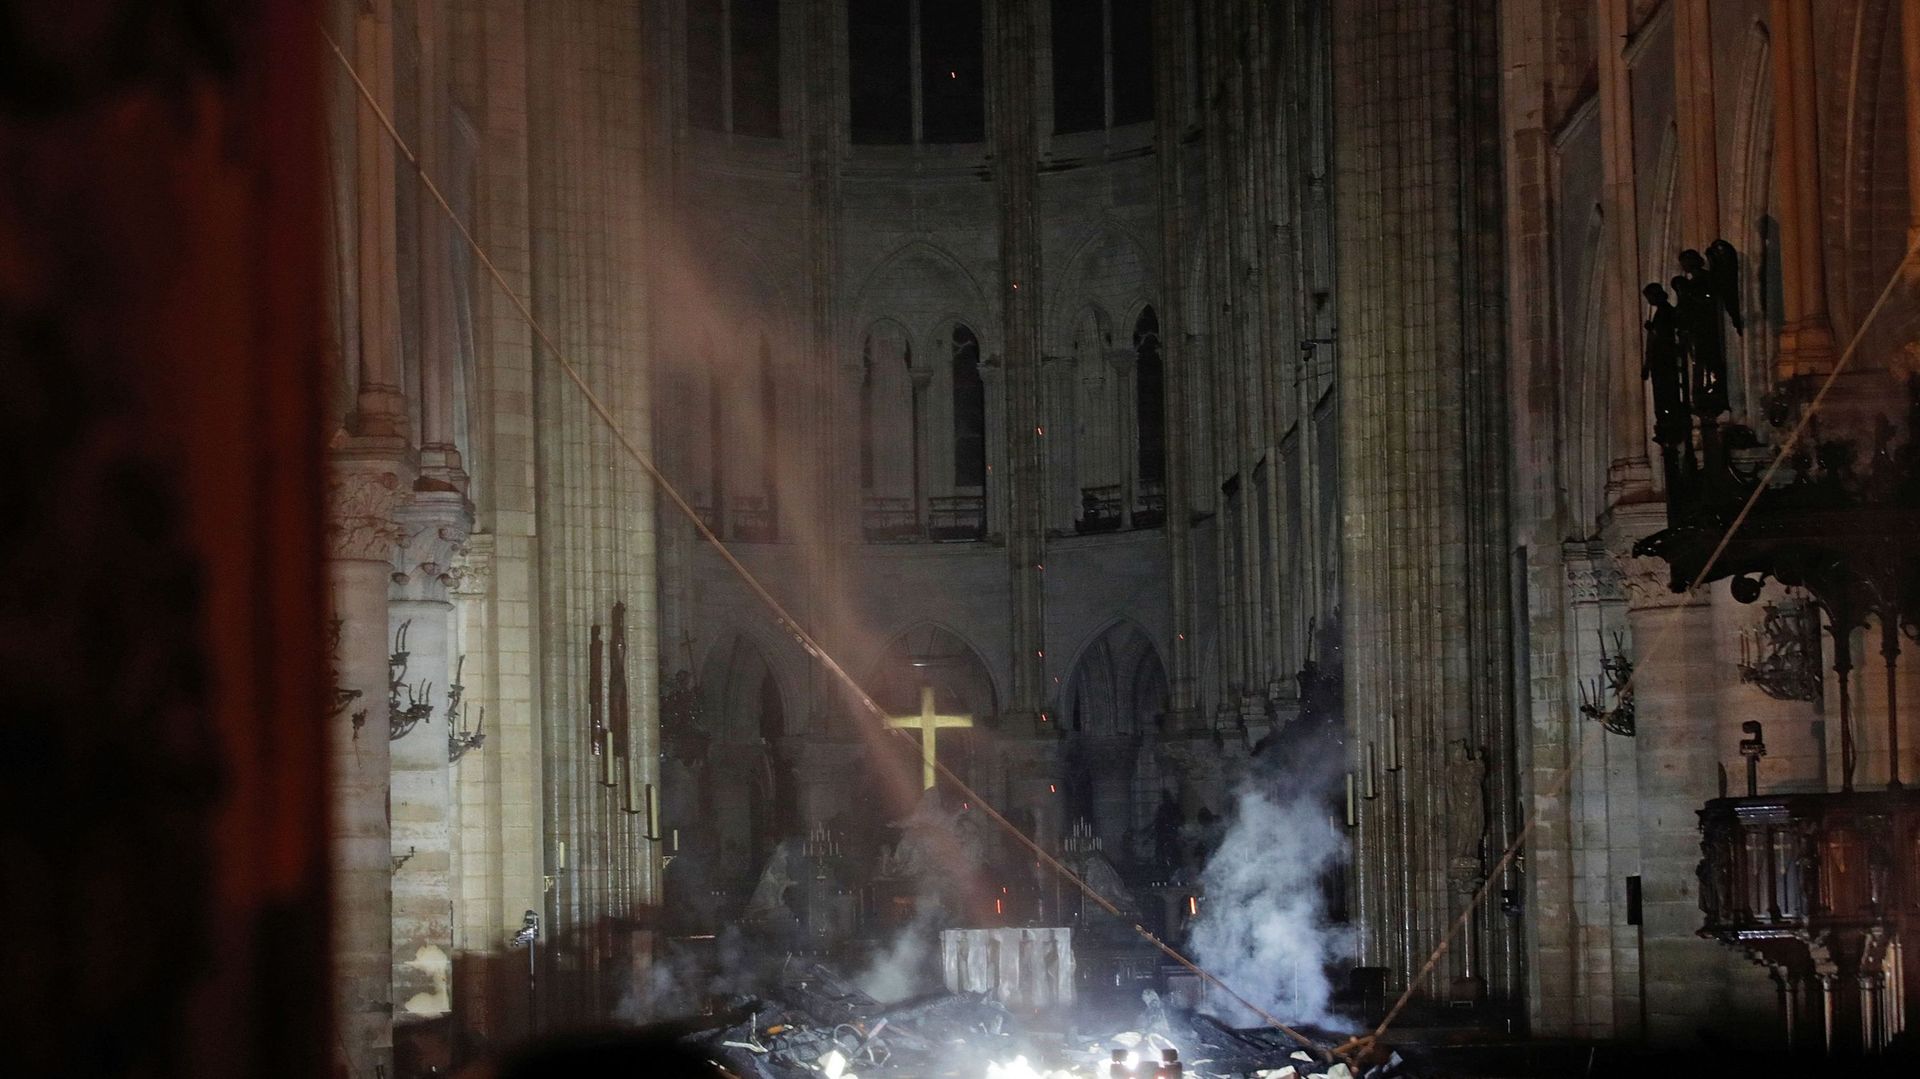 Incendie à Notre-Dame de Paris: après des heures de lutte, l'incendie est maîtrisé par les pompiers